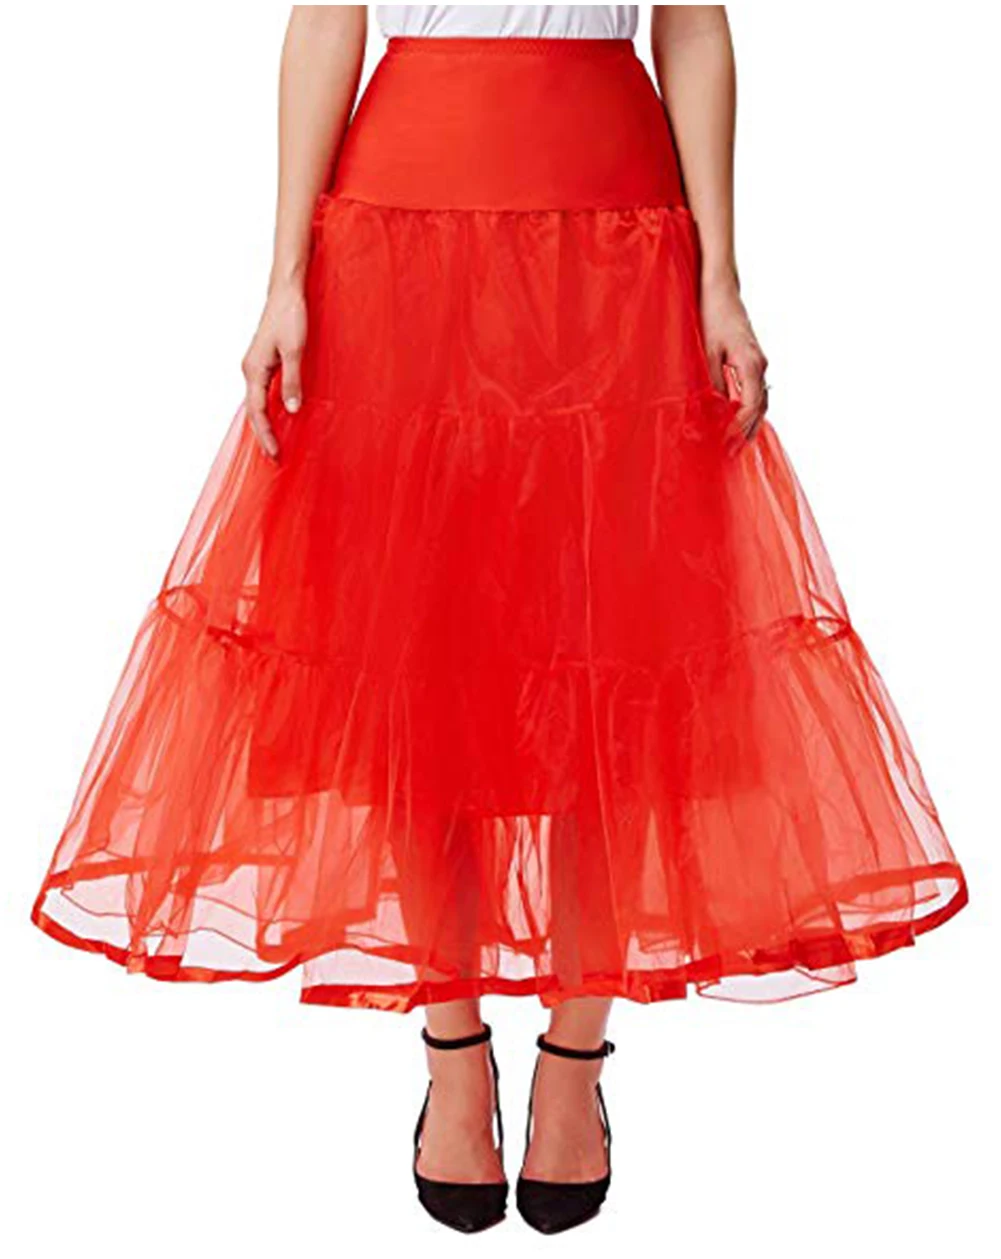 Длинная юбка из органзы на Хеллоуин, кринолин, винтажная Свадебная юбка для невесты, юбка-пачка в стиле рокабилли